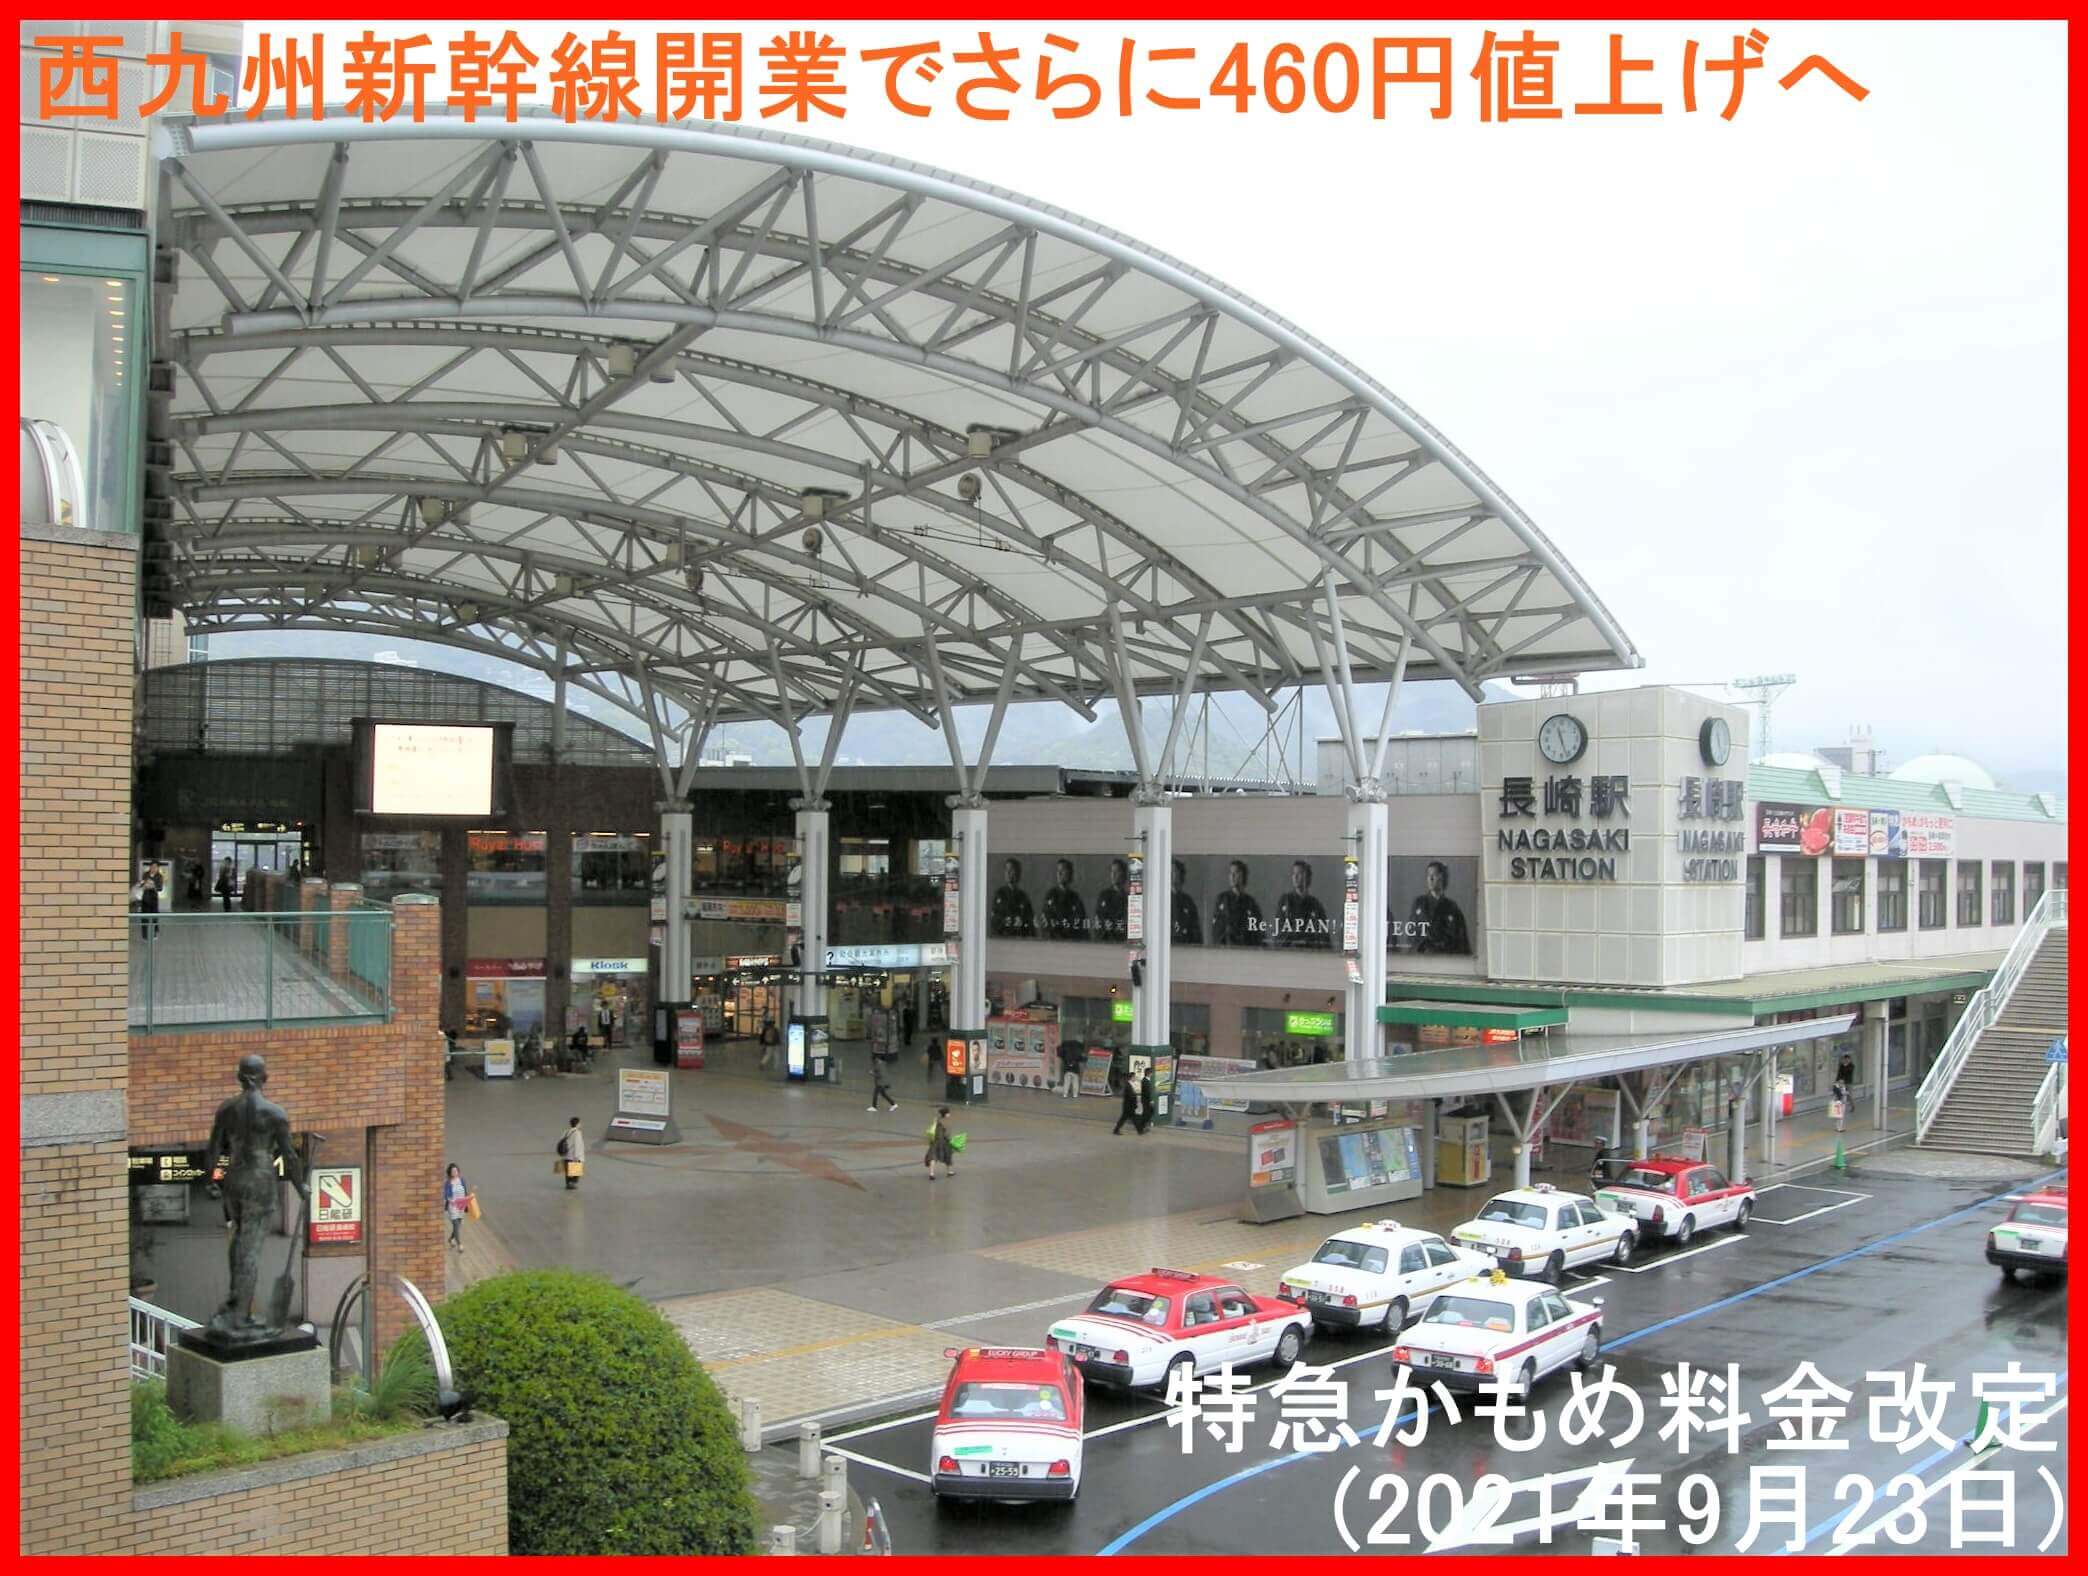 西九州新幹線開業でさらに460円値上げへ　特急かもめ料金改定(2022年9月23日)